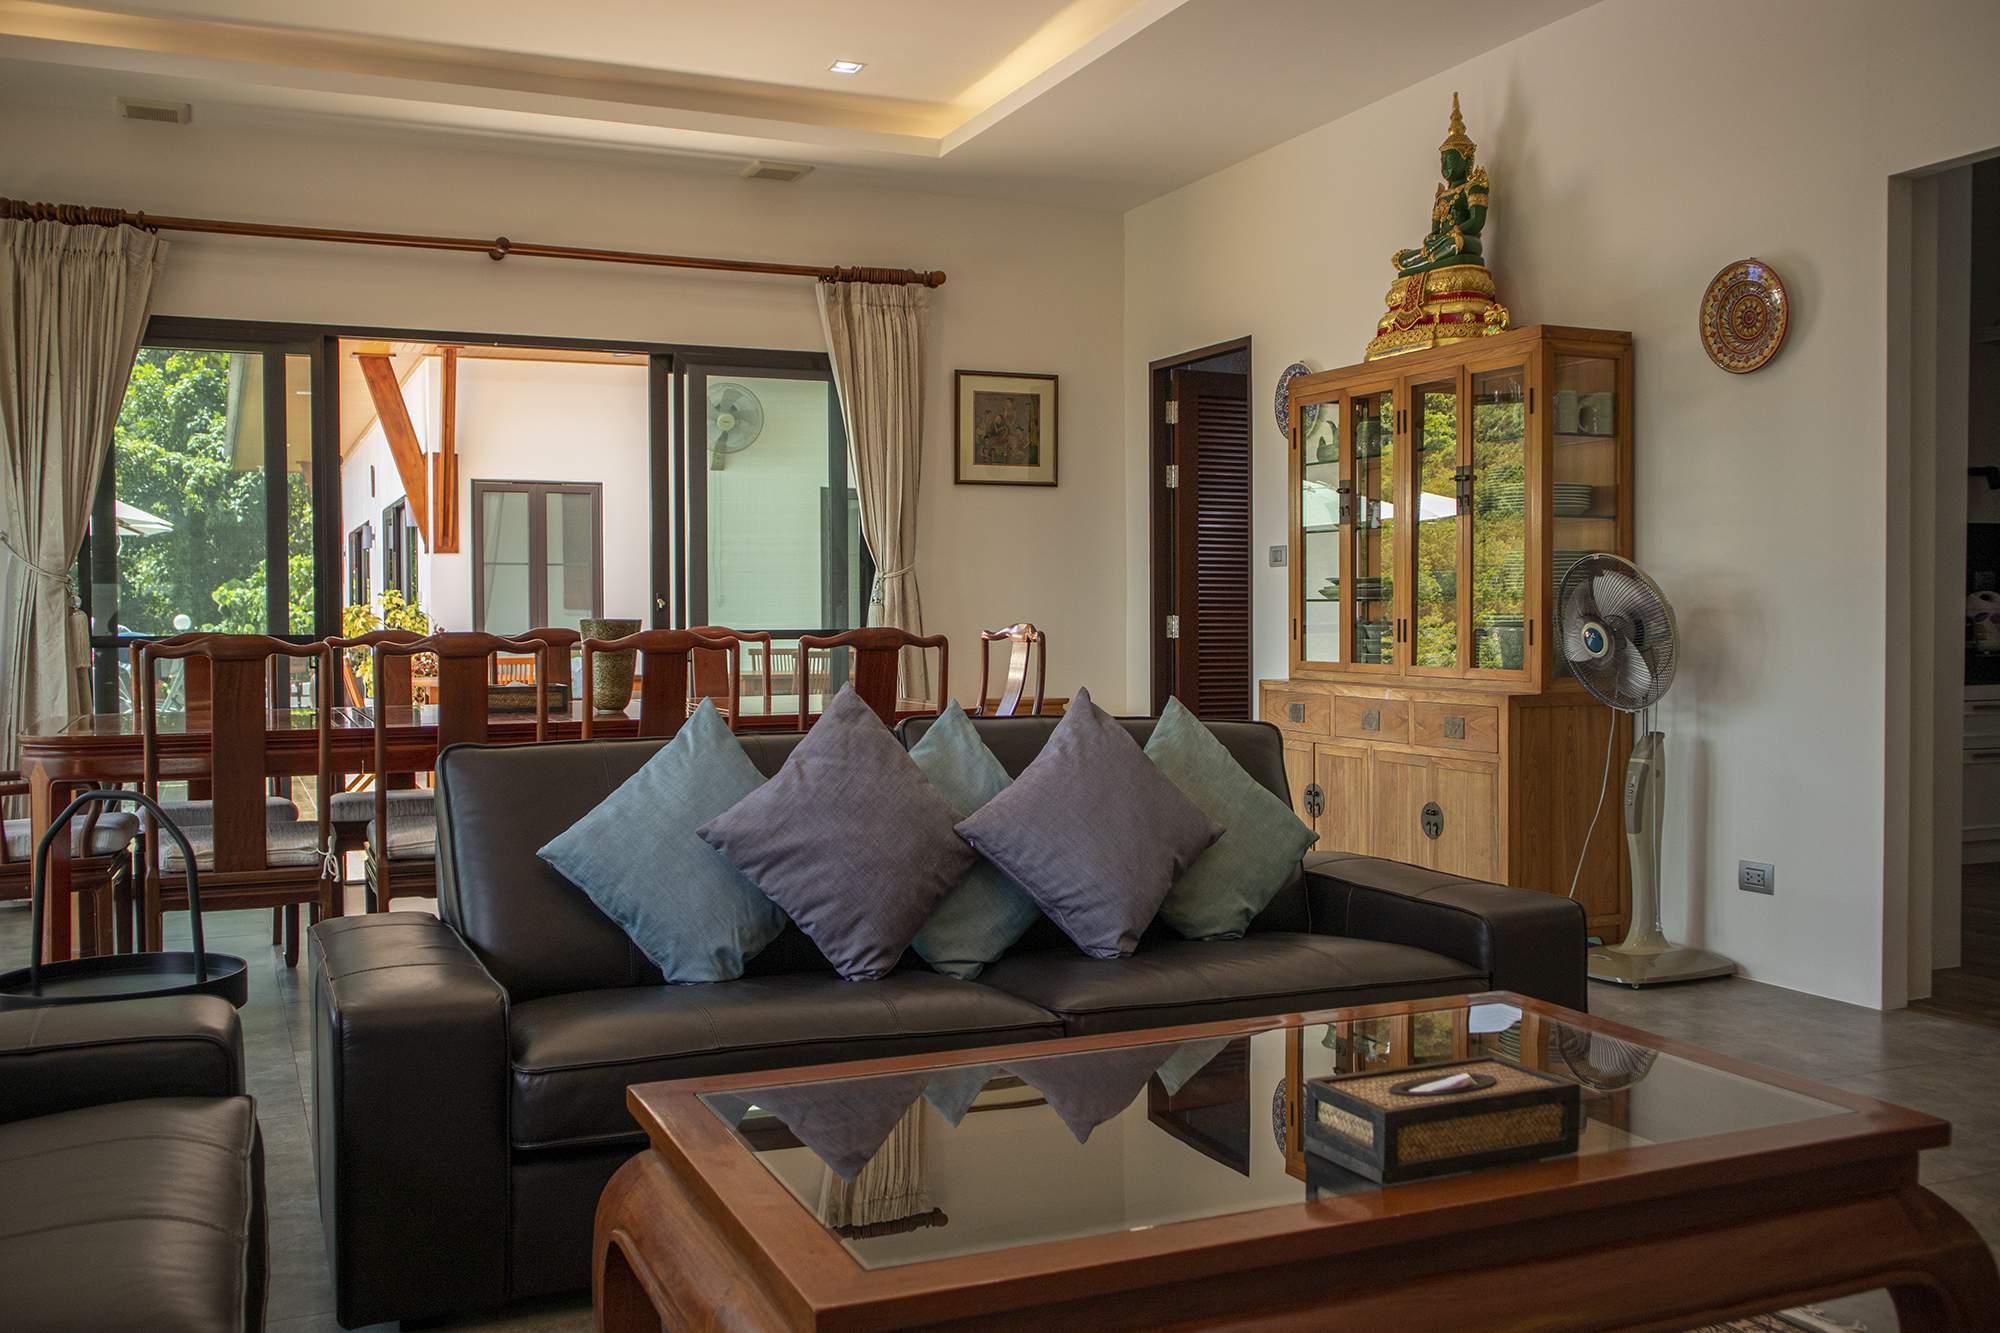 Rent villa Sabai Ta Sook Jai, Thailand, Phuket, Rawai | Villacarte